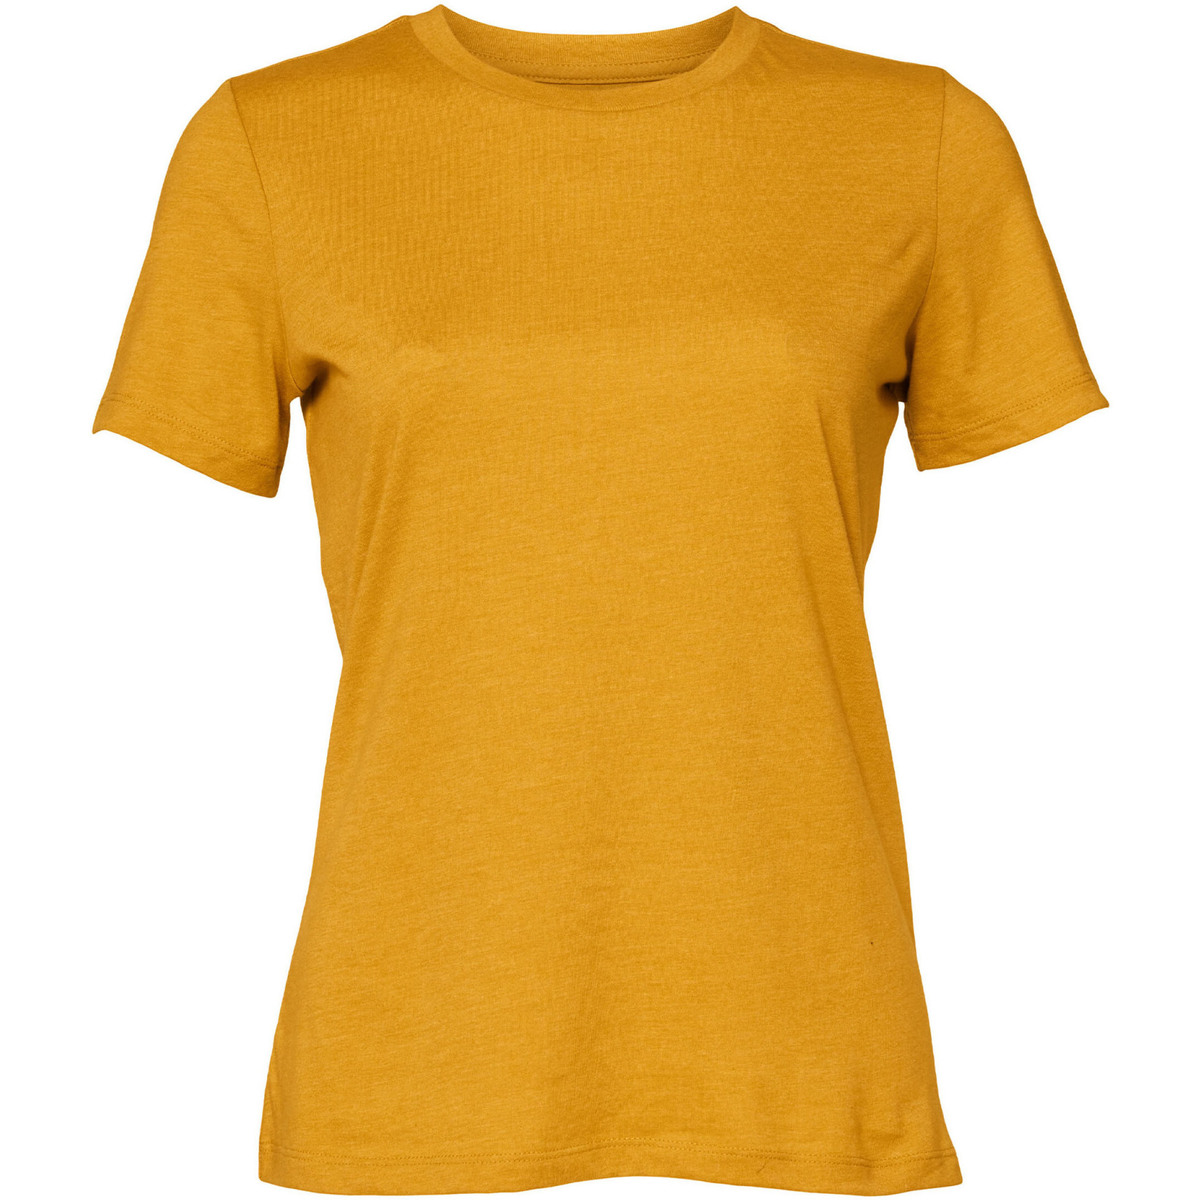 Vêtements Femme T-shirts manches longues Bella + Canvas BE6400CVC Multicolore